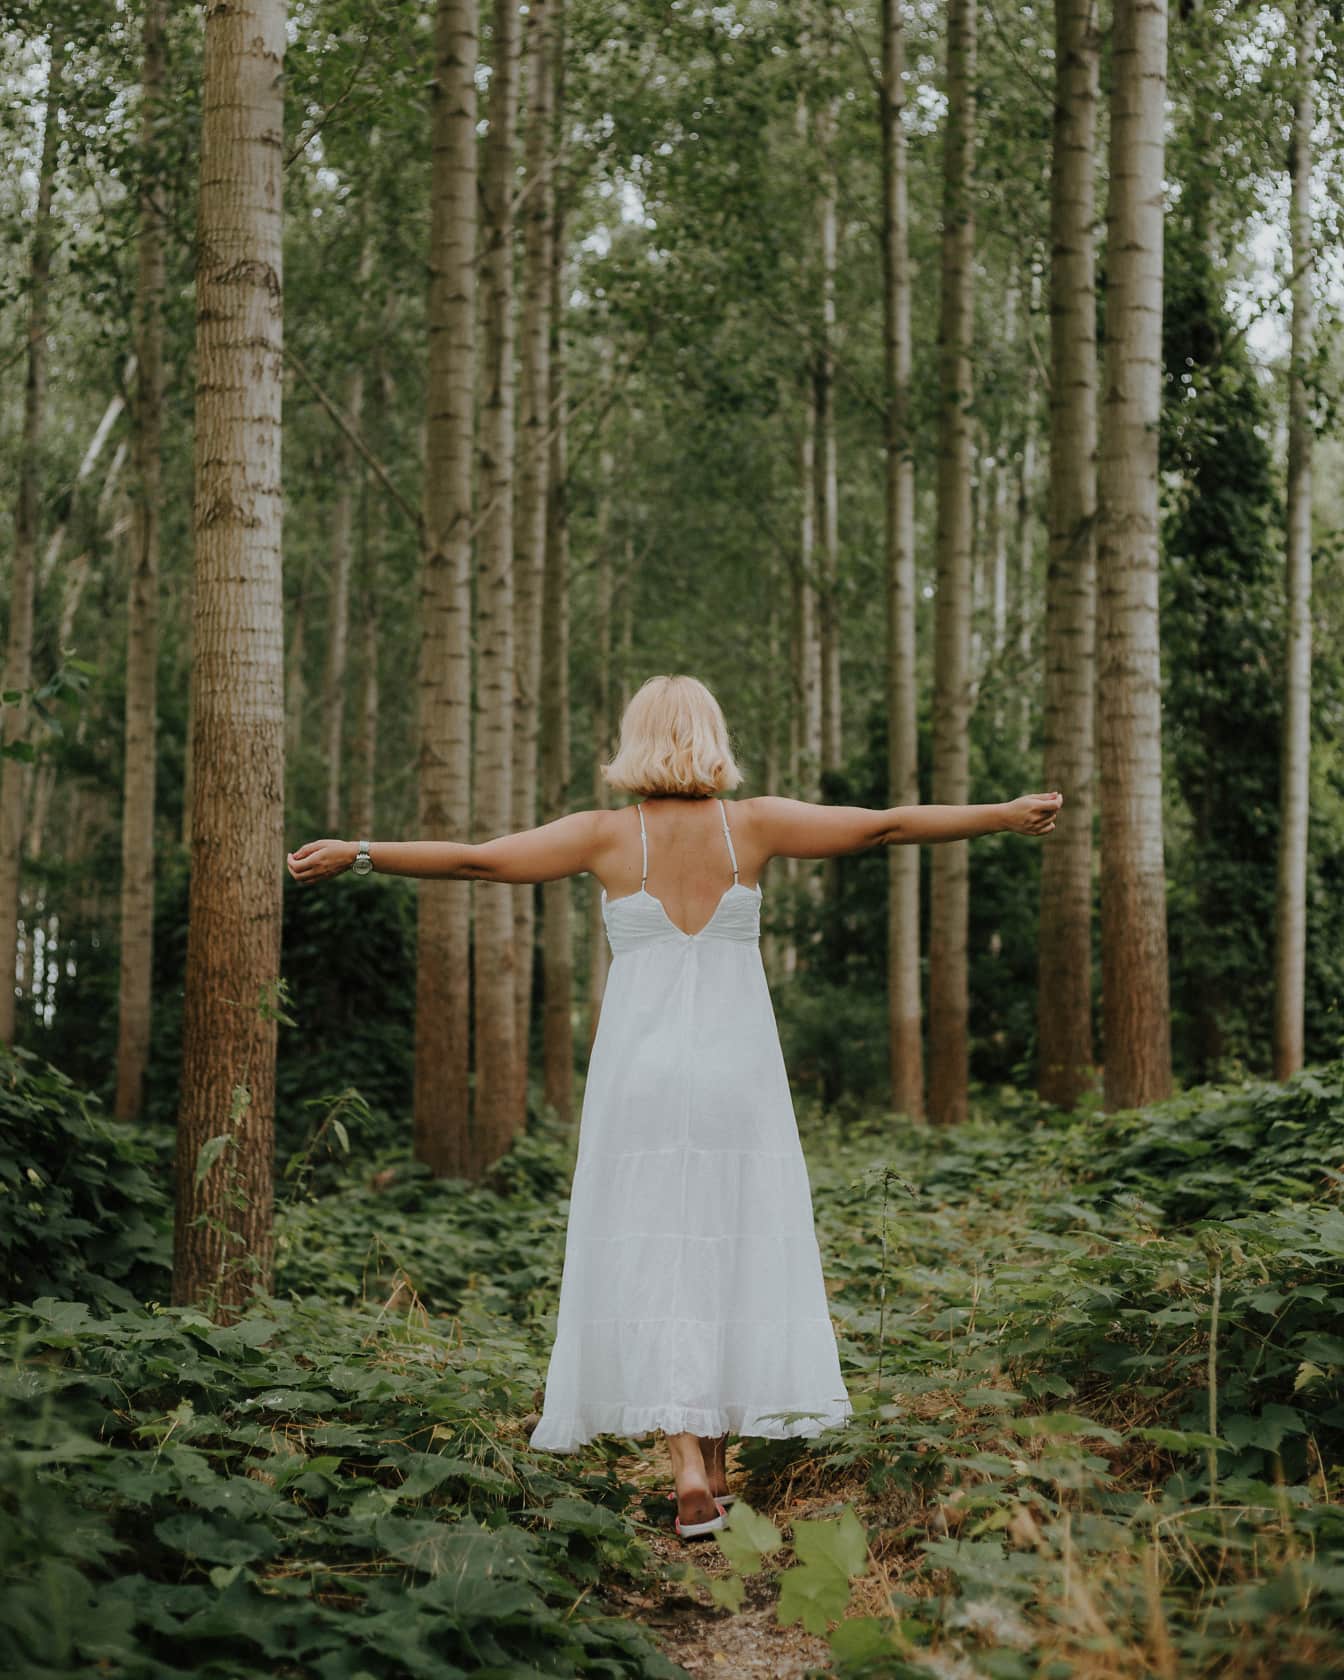 Blondynka stojąca w lesie ubrana w czystą białą sukienkę